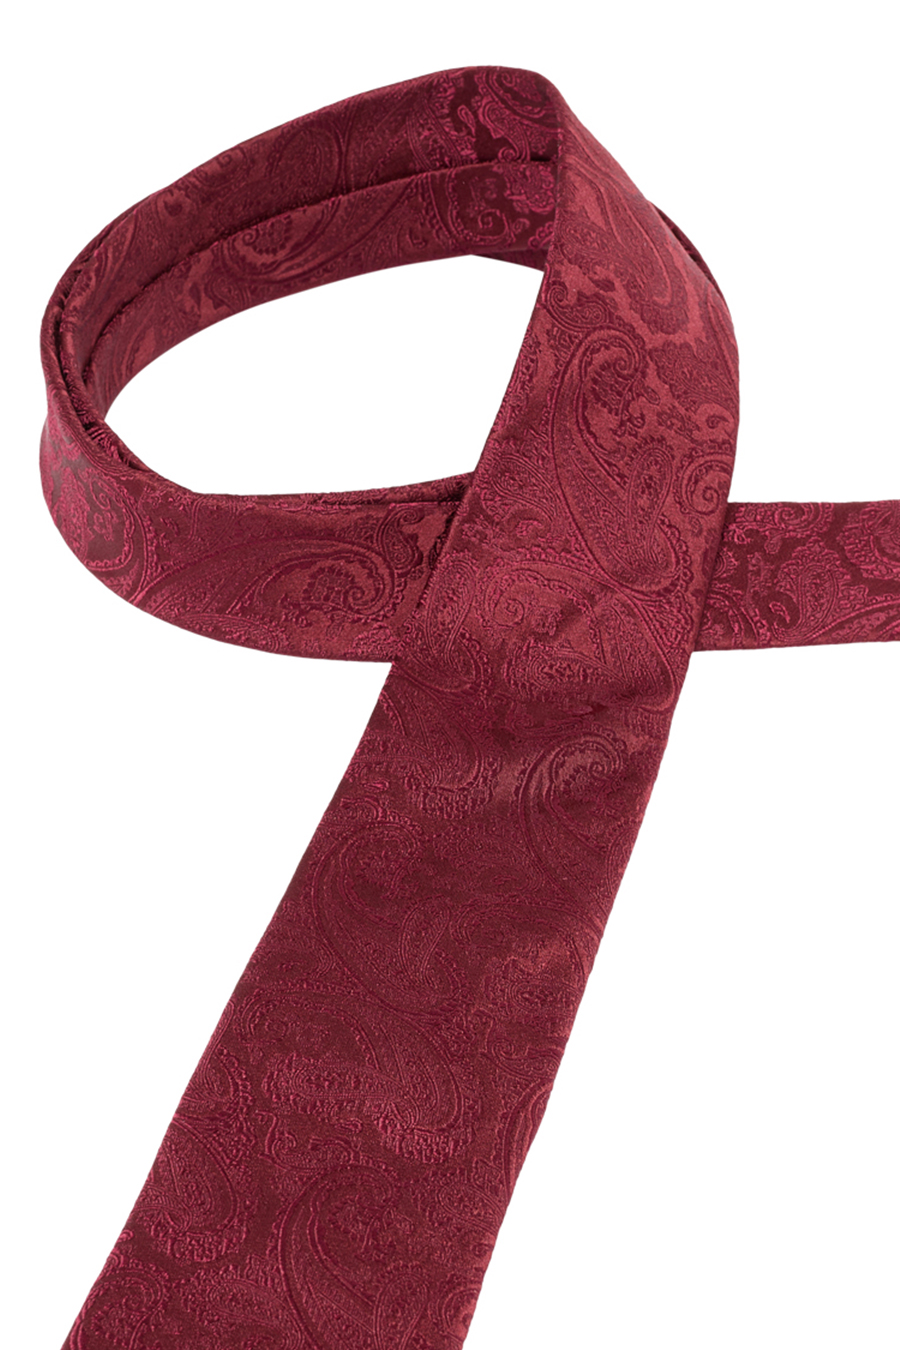 ETERNA 1863 Krawatte aus reiner Seide breit cm dunkelrot 7,5